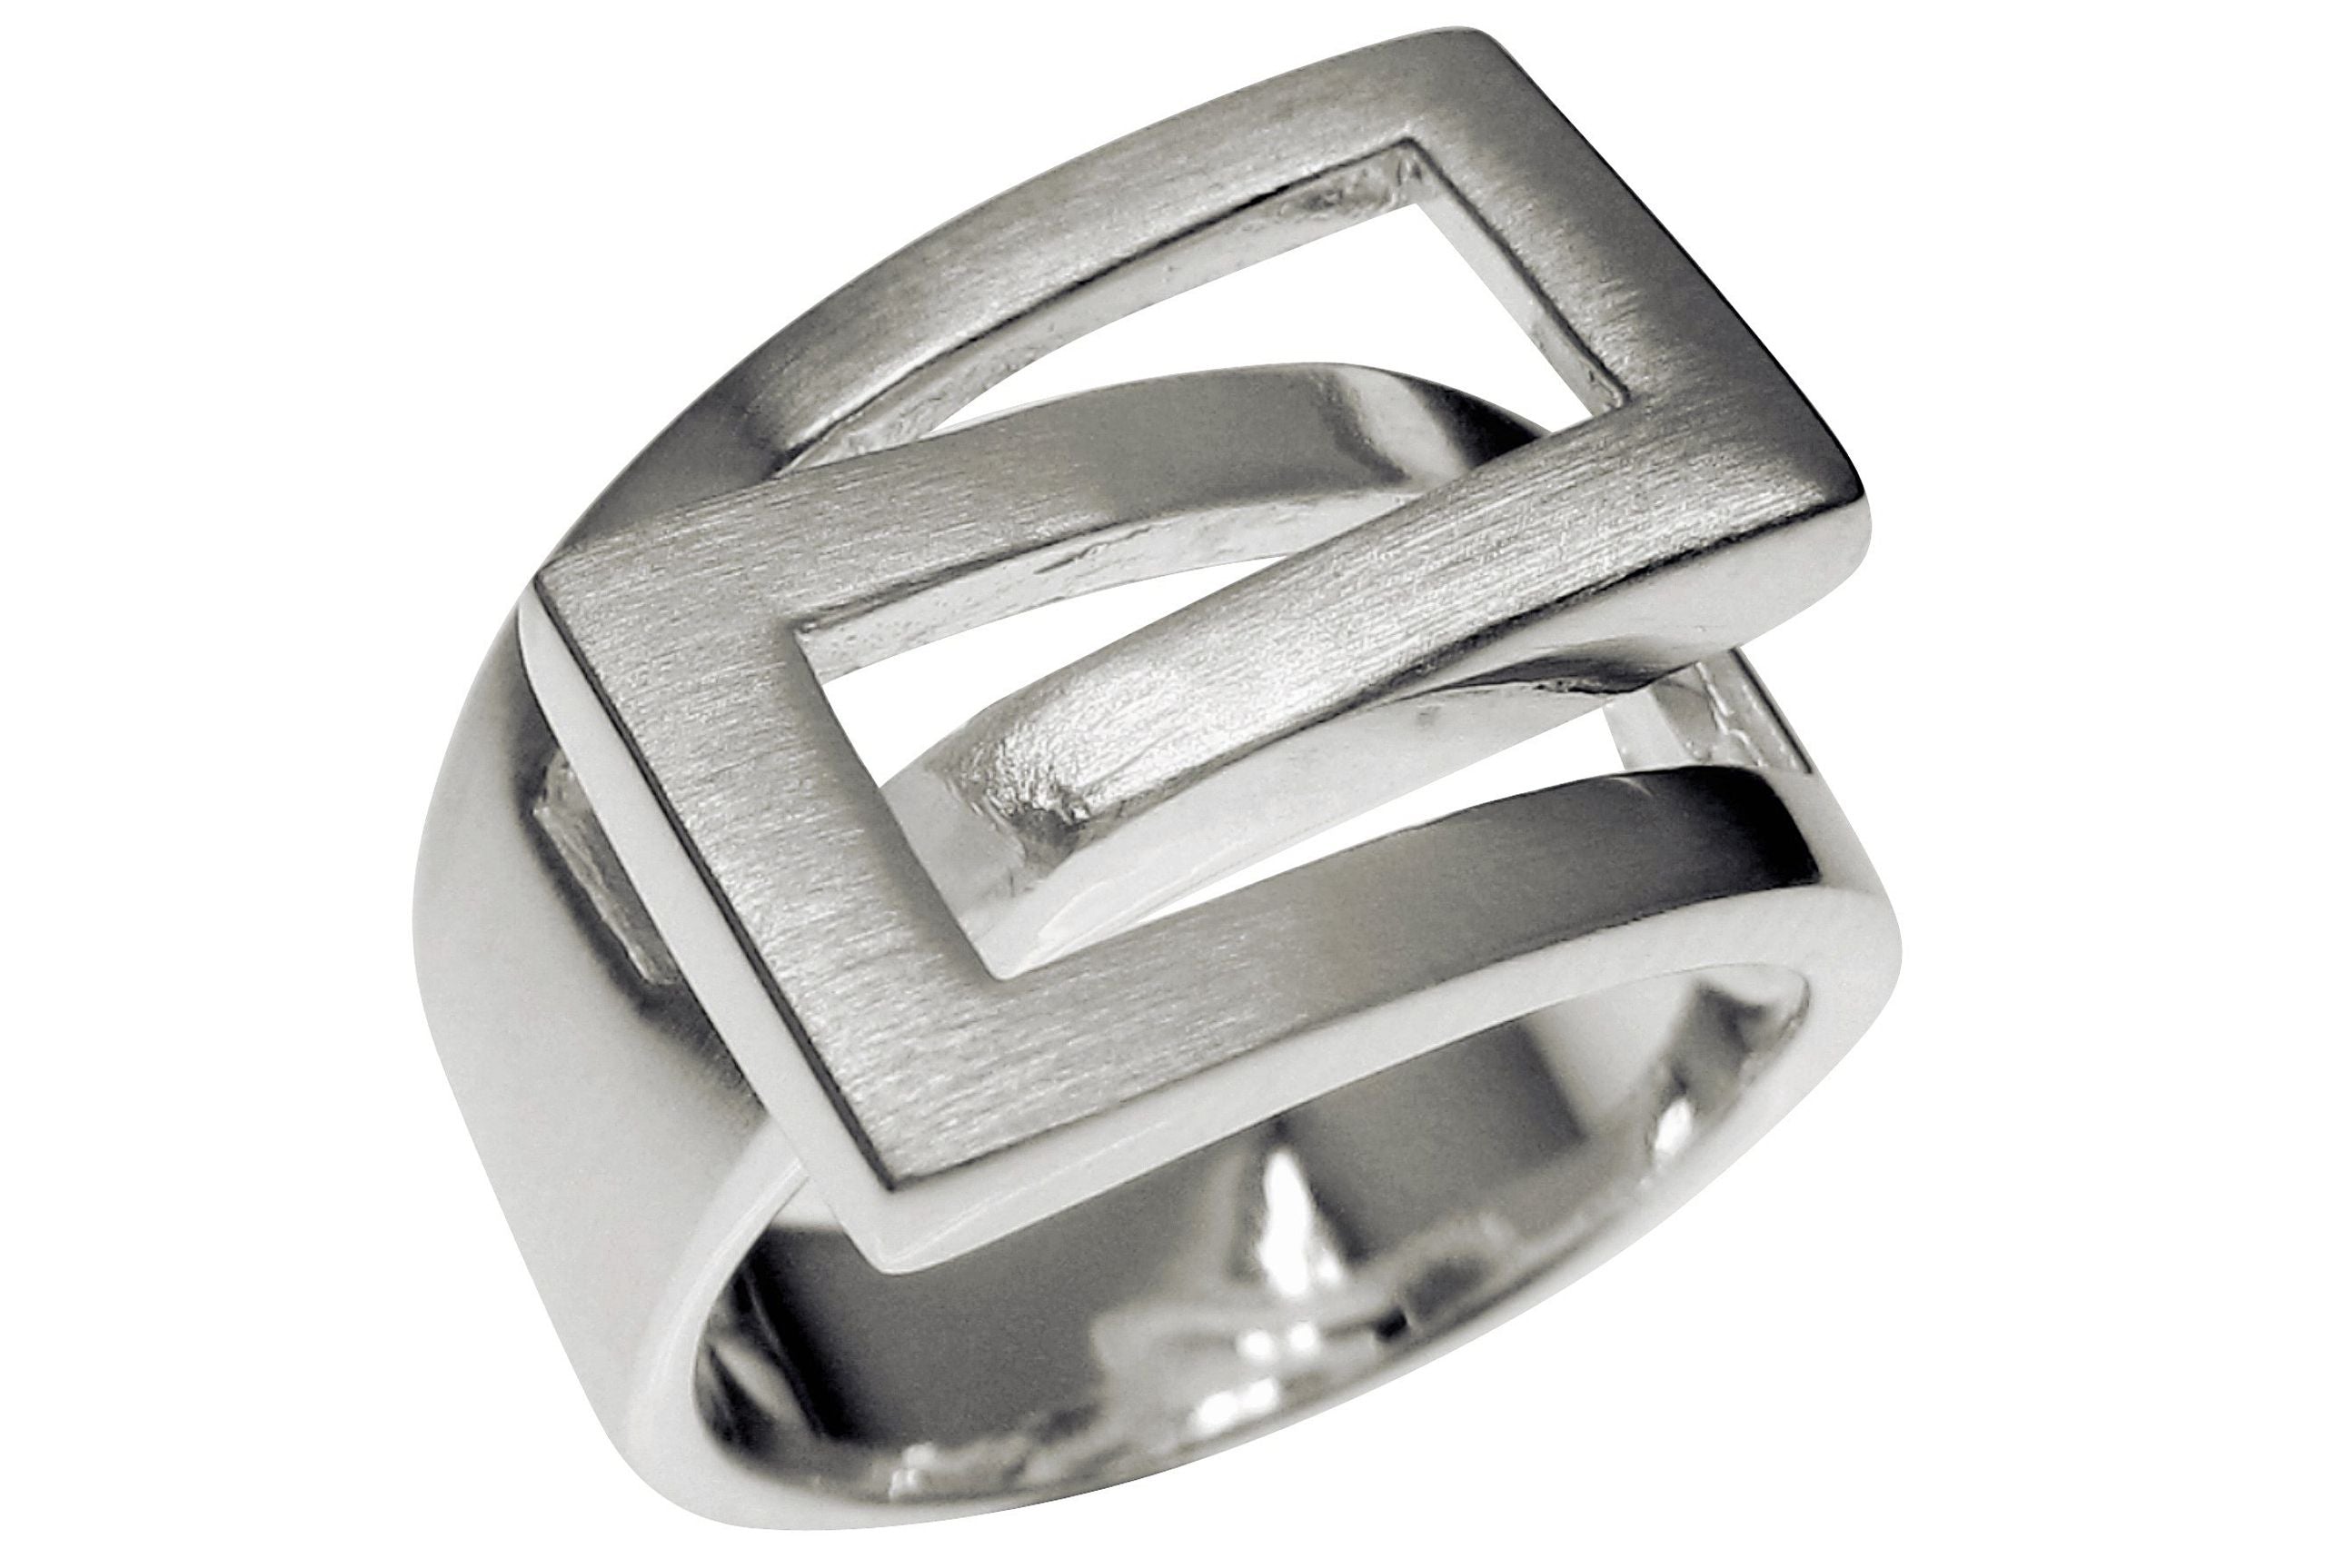 Ein Damenring aus Silber in großen Größen, bestehend aus einer massiven Ringschiene und zwei ineinander umschlungenen Vierecken.